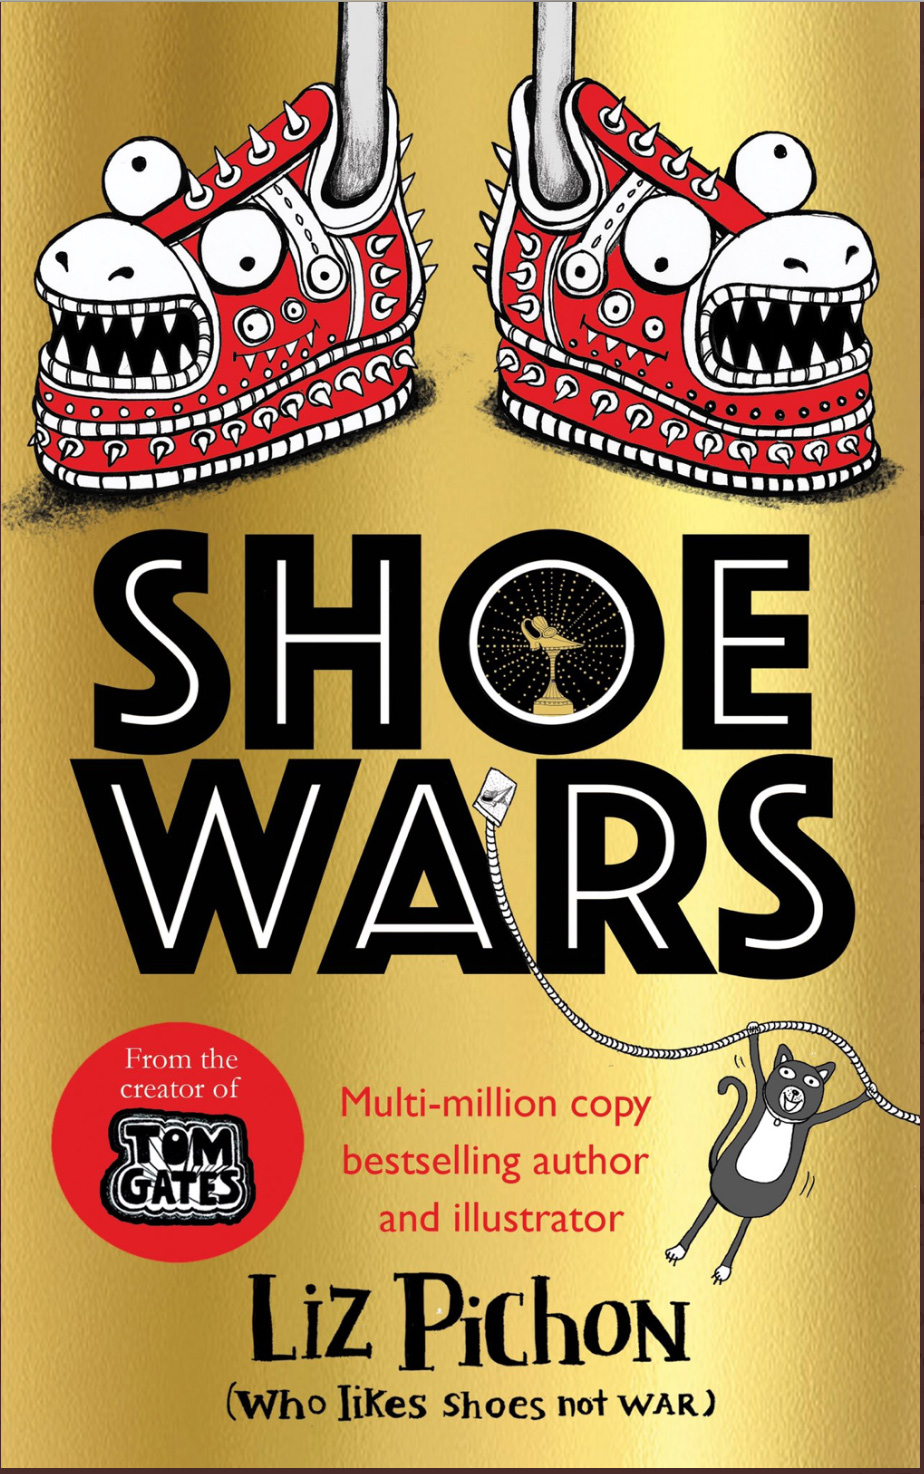 Shoe Wars is here!